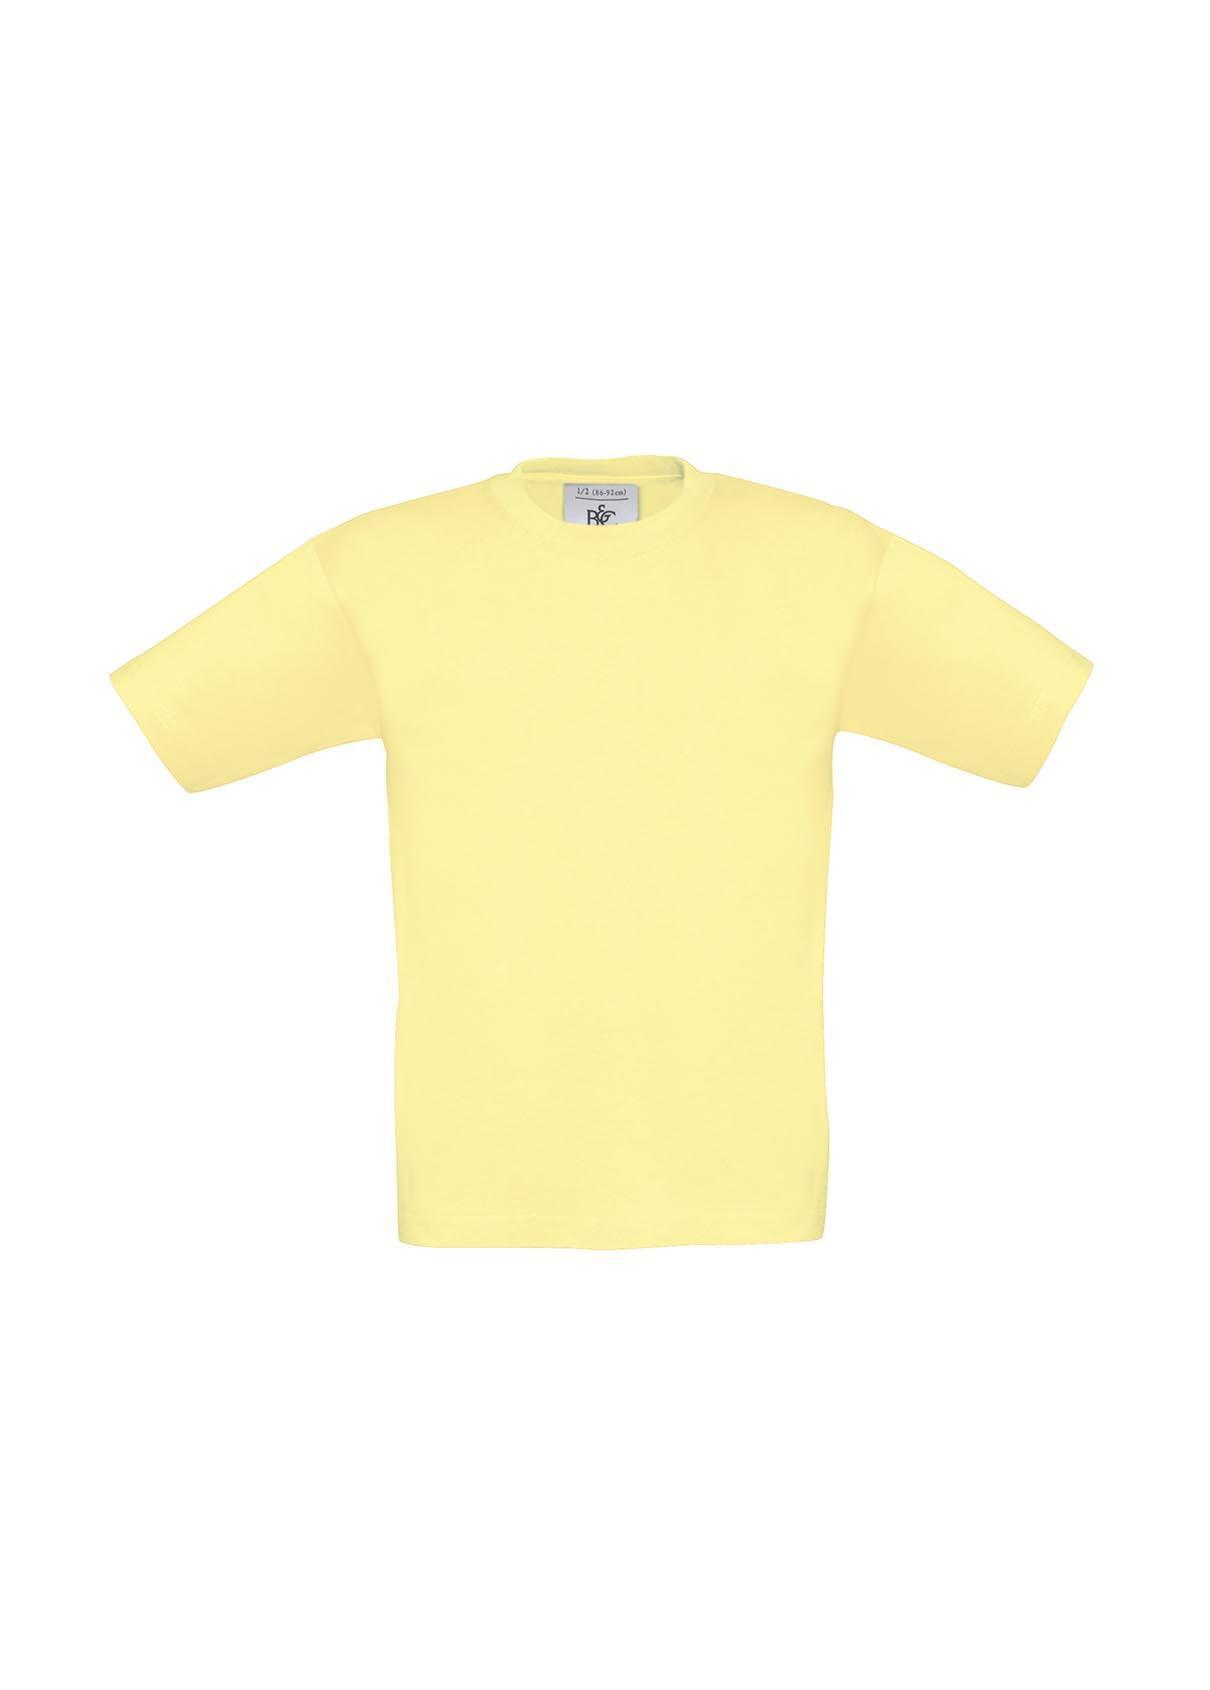 T-shirt voor kids geel kinder shirt